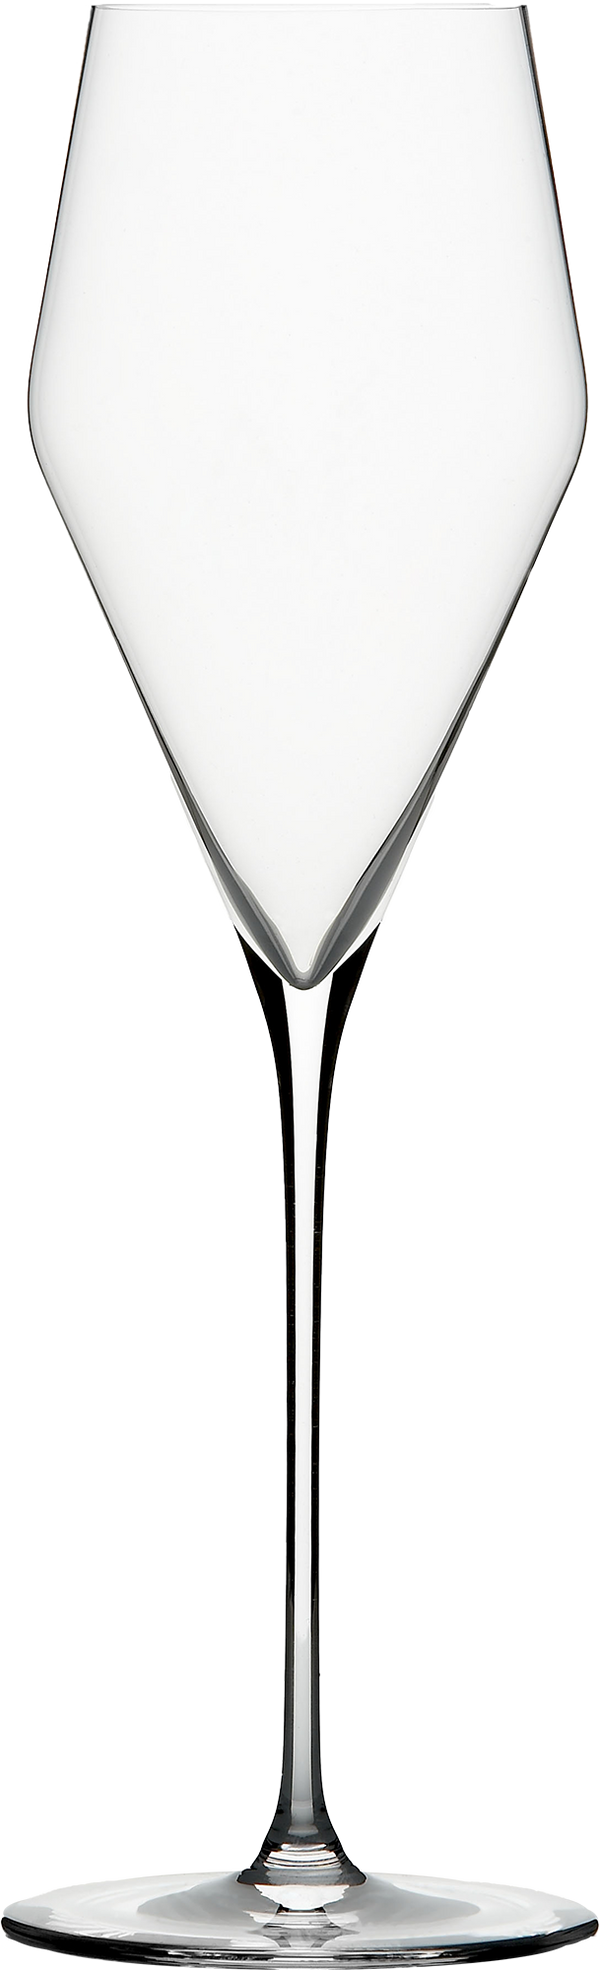 Zalto Champagne Glass 6 Pack